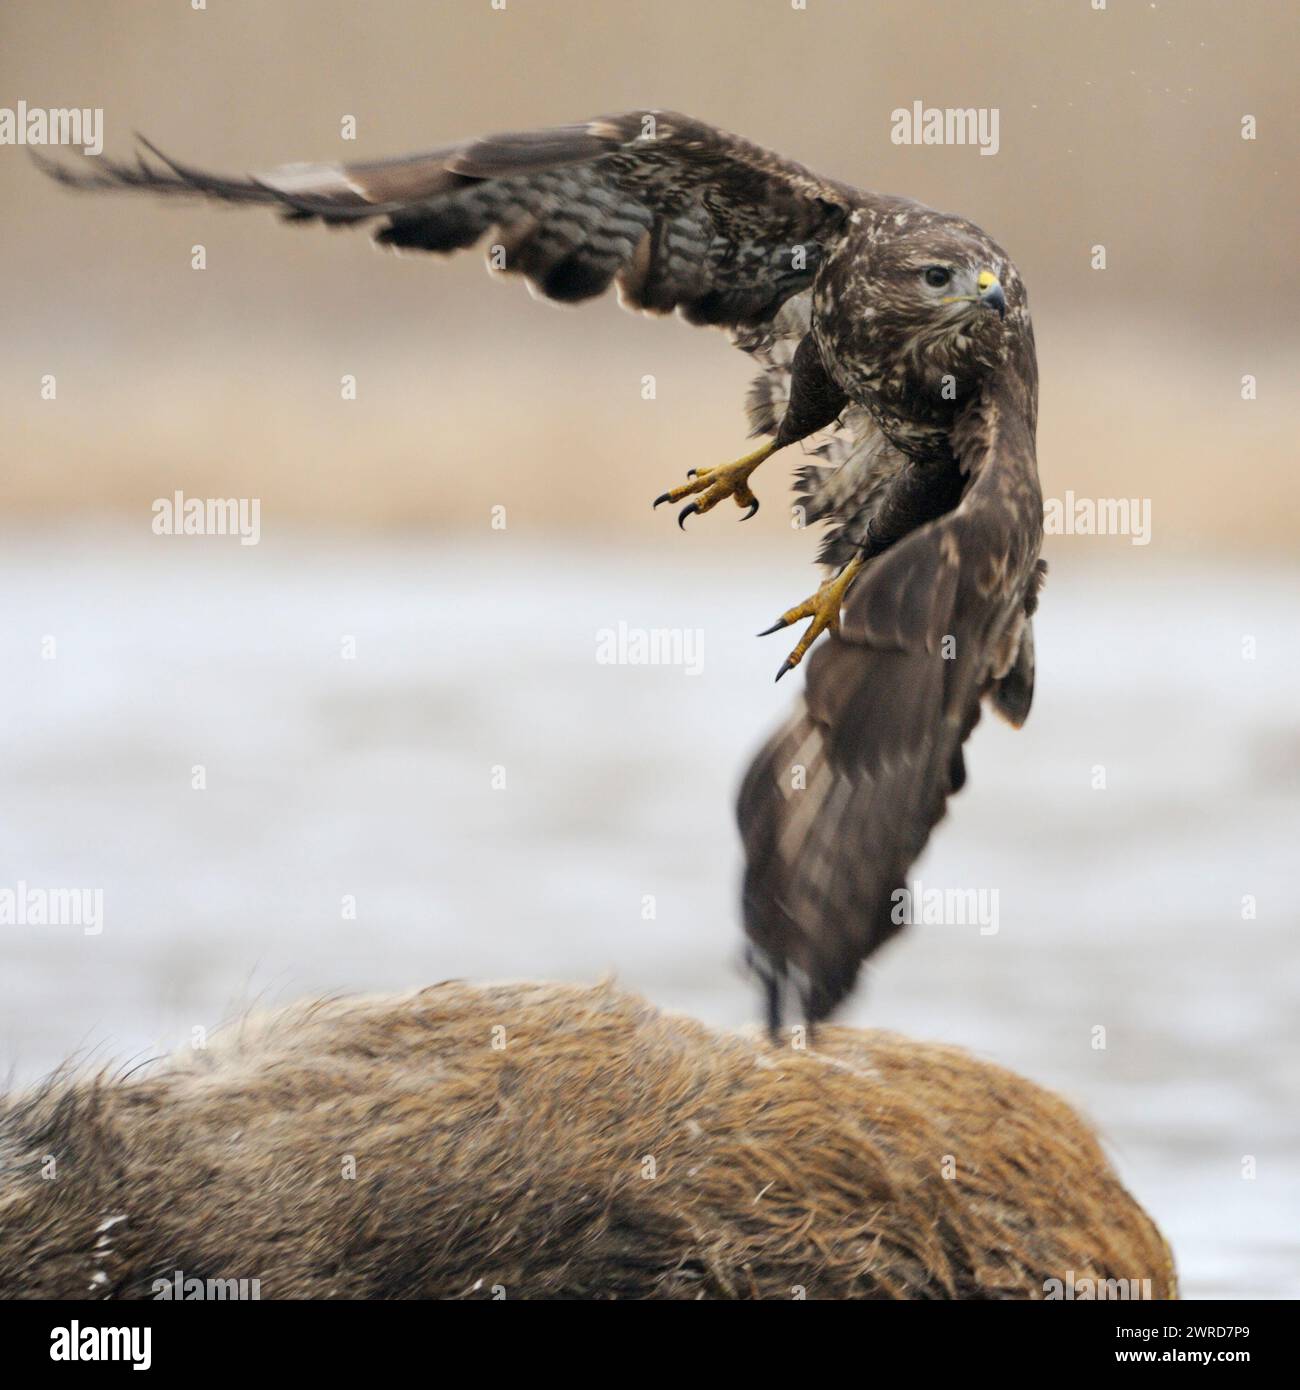 Buzzard comune / Buzzard ( Buteo buteo) decollo da una carcassa, dove si nutriva prima, fauna selvatica, Europa. Foto Stock